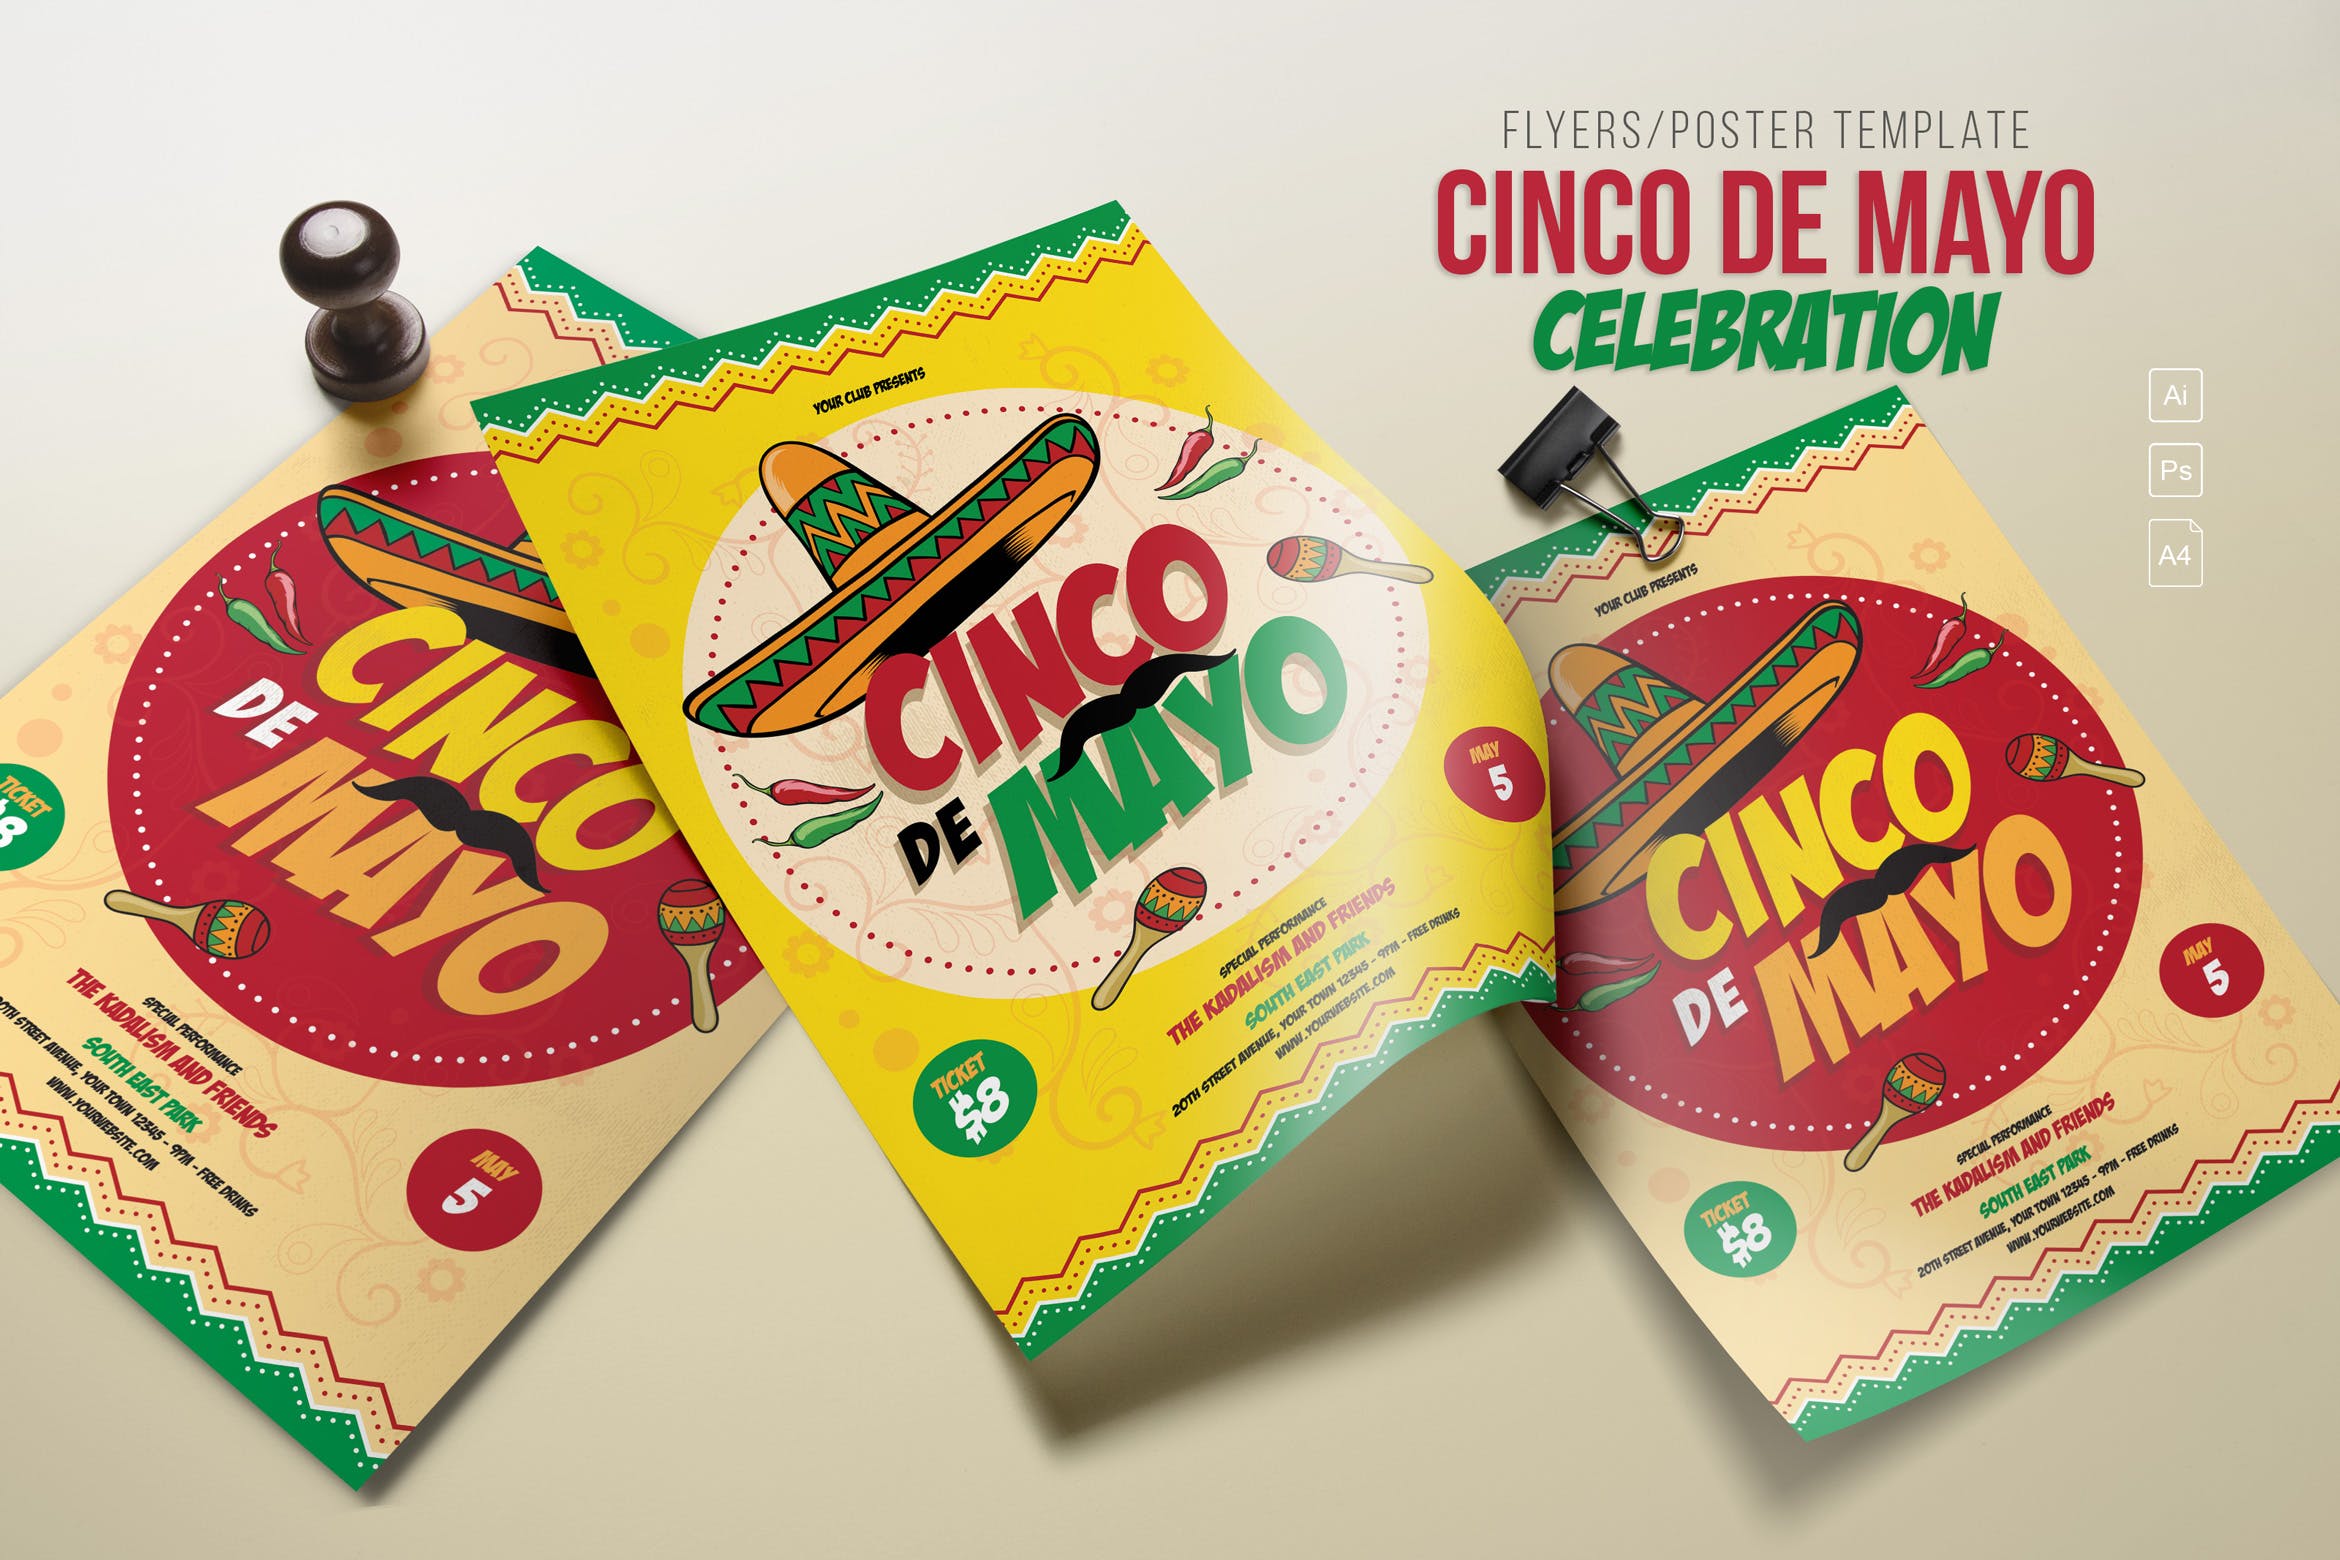 五月五日墨西哥爱国主义节日庆祝活动海报PSD素材蚂蚁素材精选模板 Cinco de Mayo Celebration插图